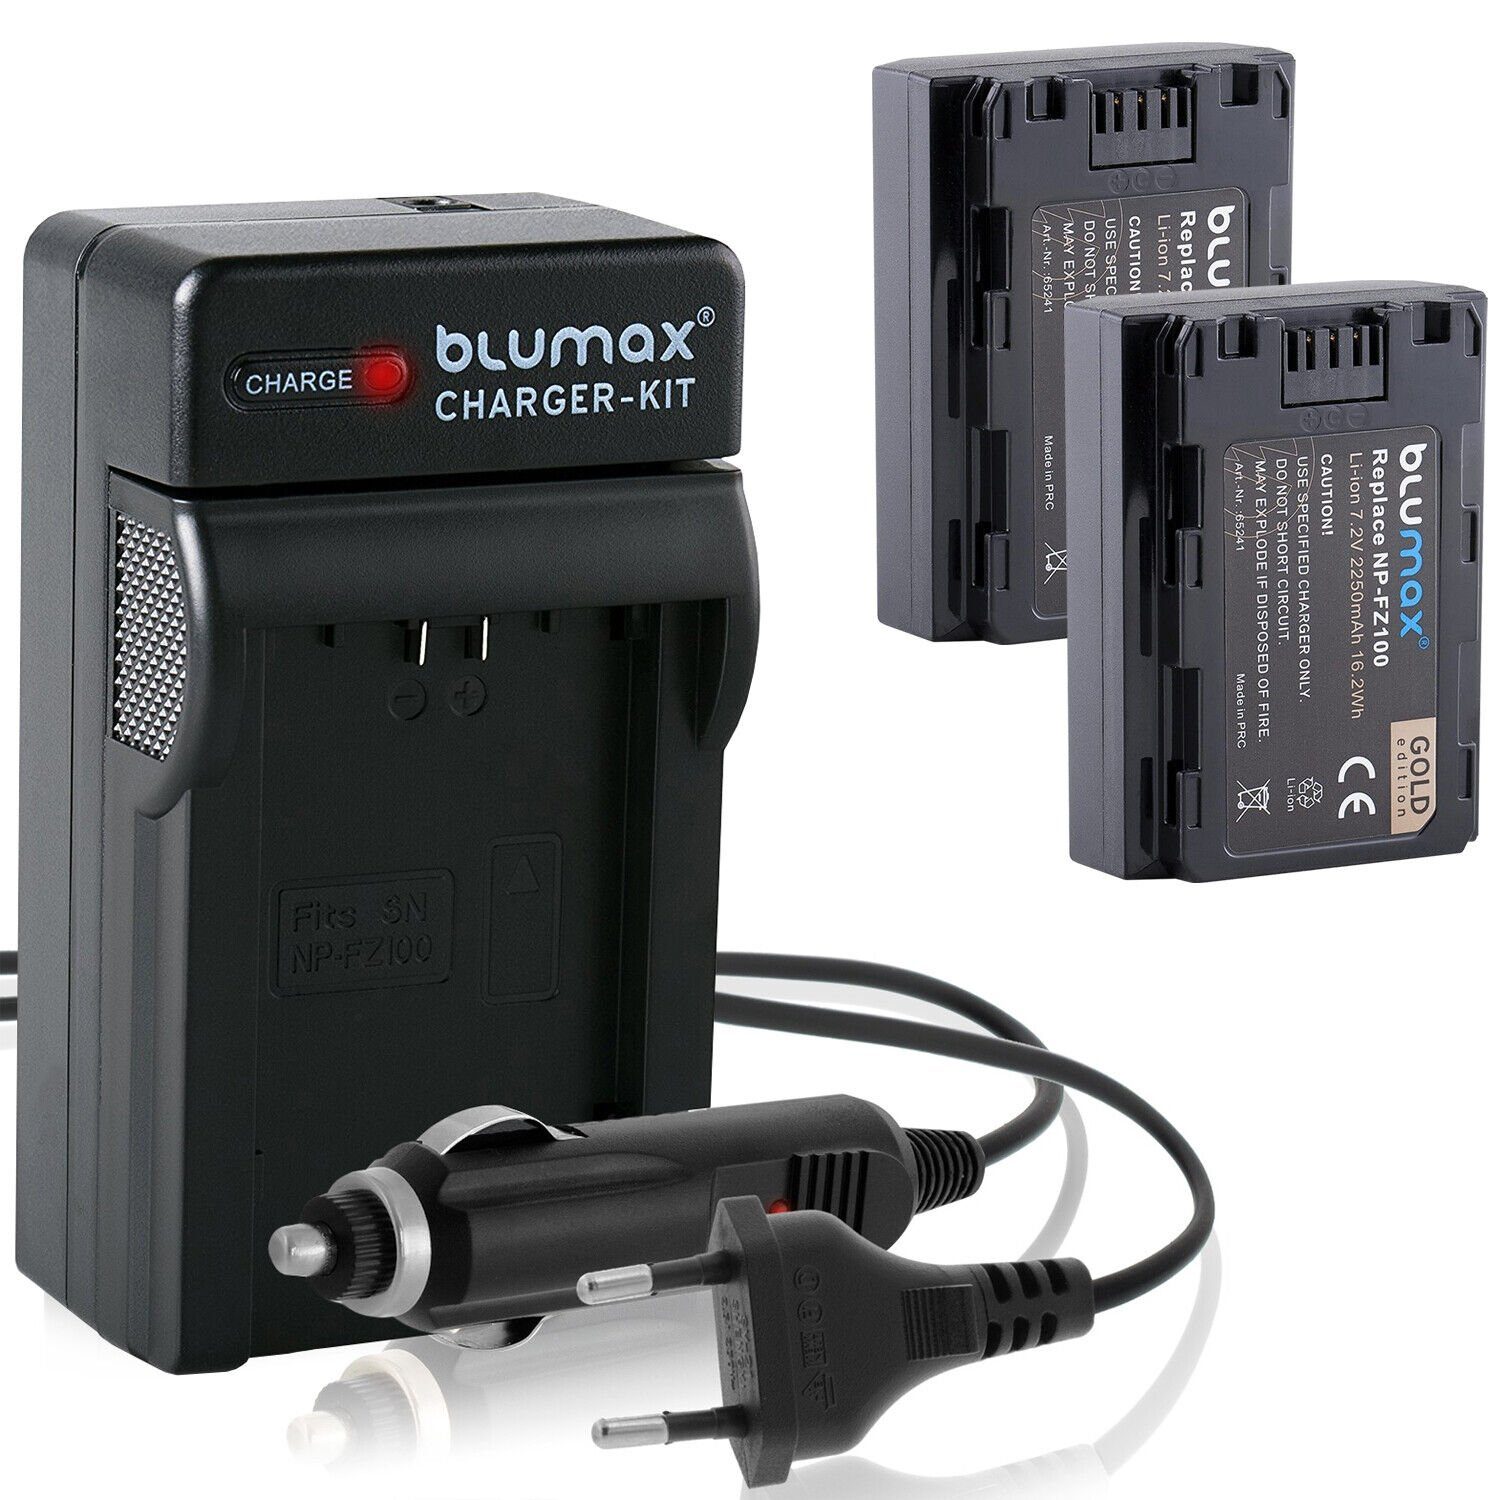 Blumax Set mit mAh für 2250 FZ-FZ100 Lader Kamera-Akku Alpha Sony